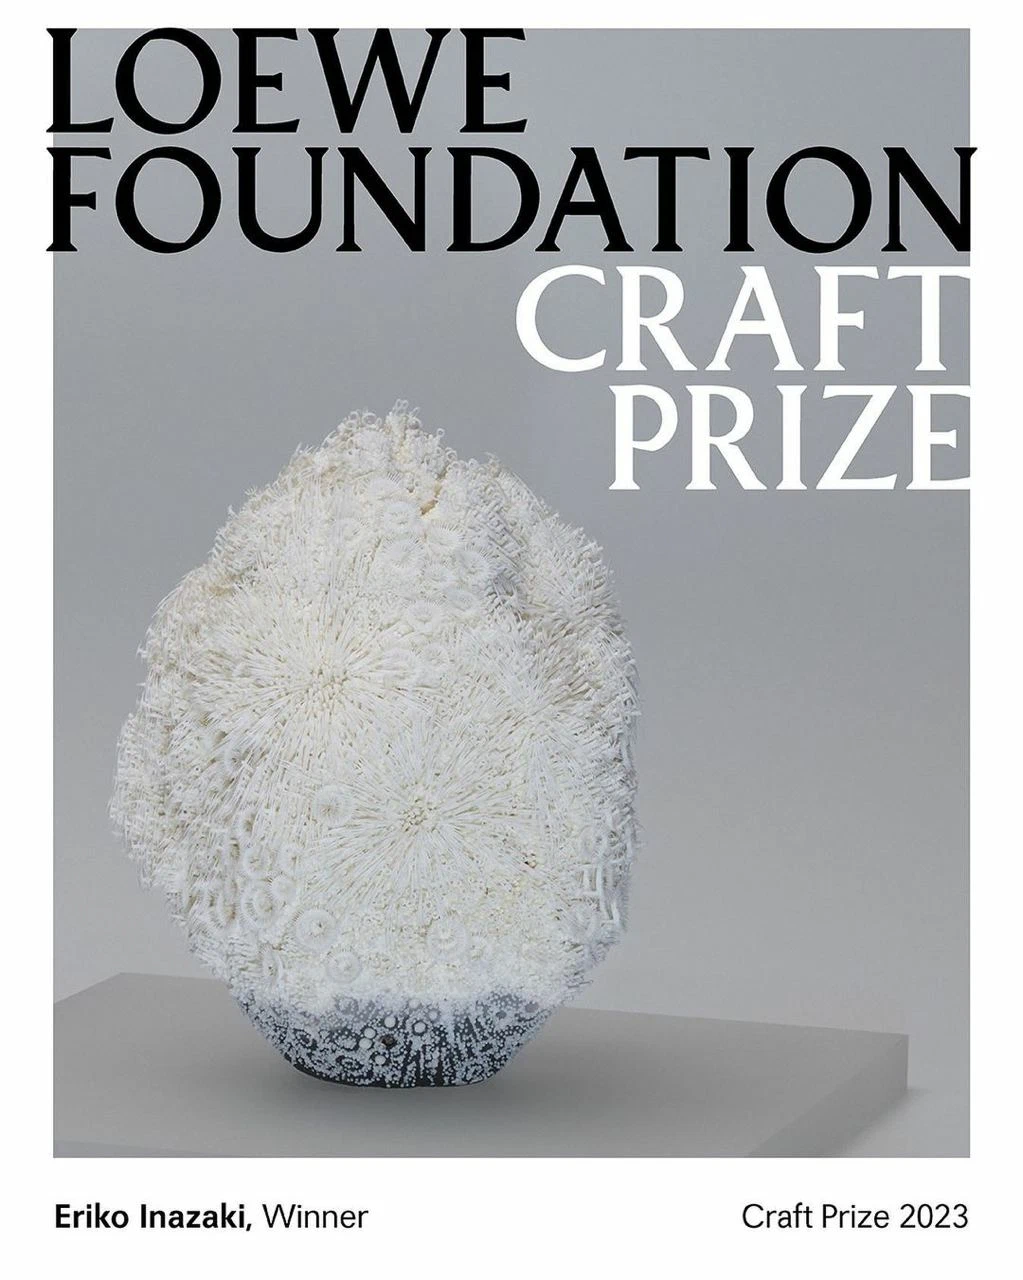 Японская керамистка Эрико Синодзаки выиграла премию фонда Loewe Craft Prize 2023 (фото 1)